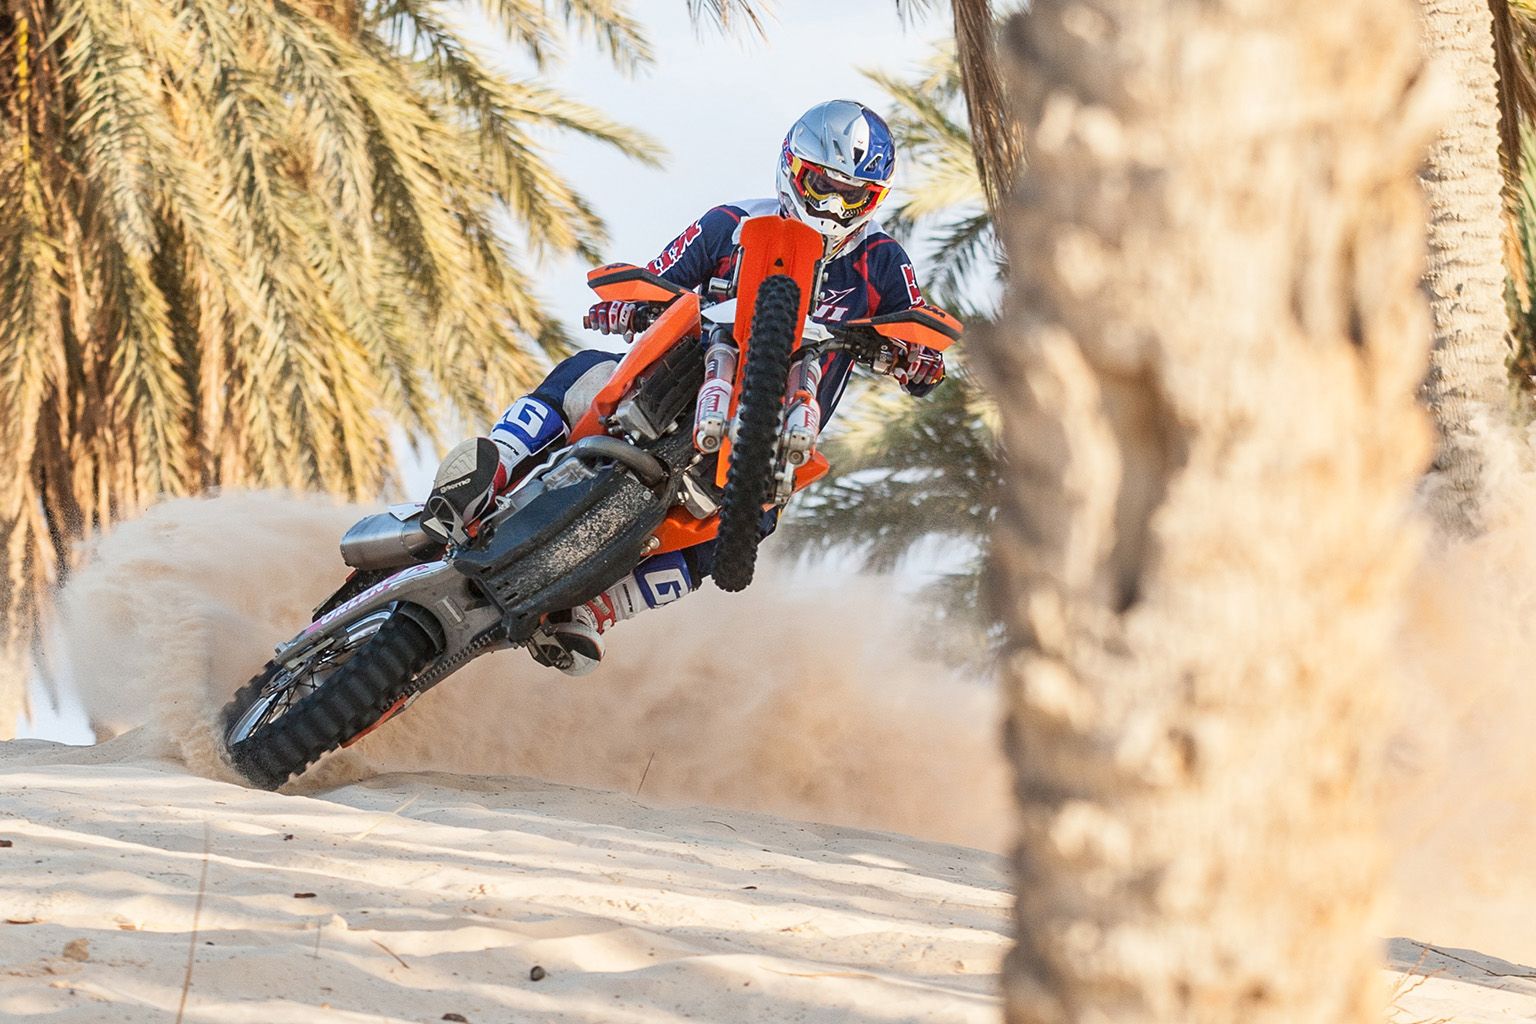 Immagine sportive, fotografia sportiva, fotografare moto, Tuareg Rallye Tunisia 2013